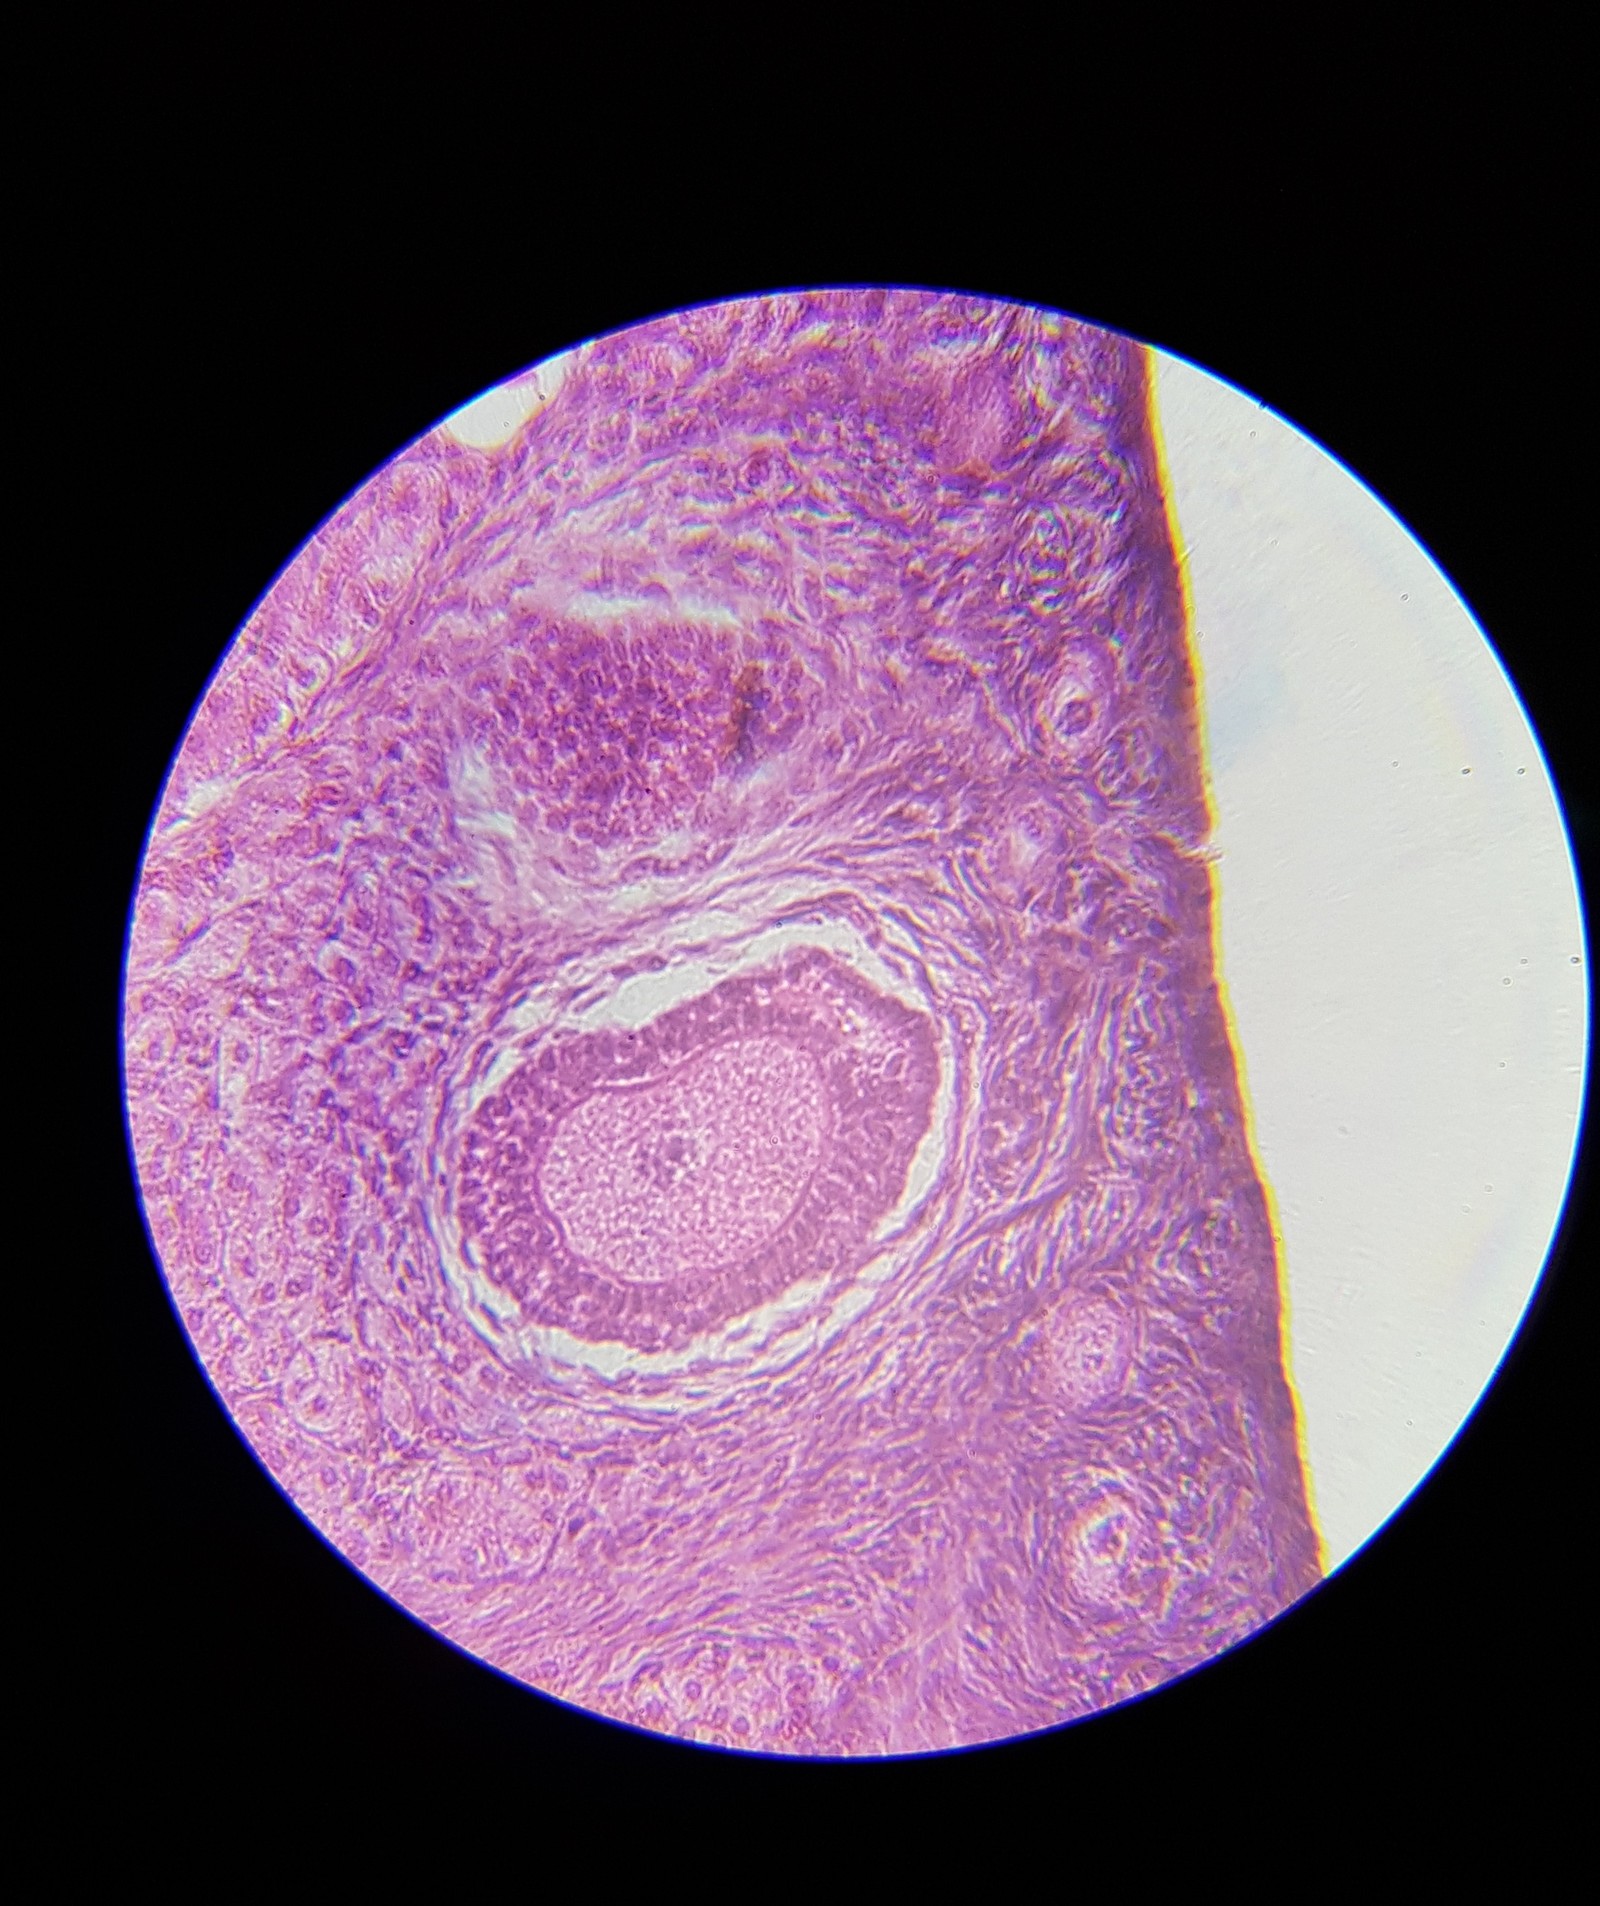 Яйца власоглава под микроскопом фото